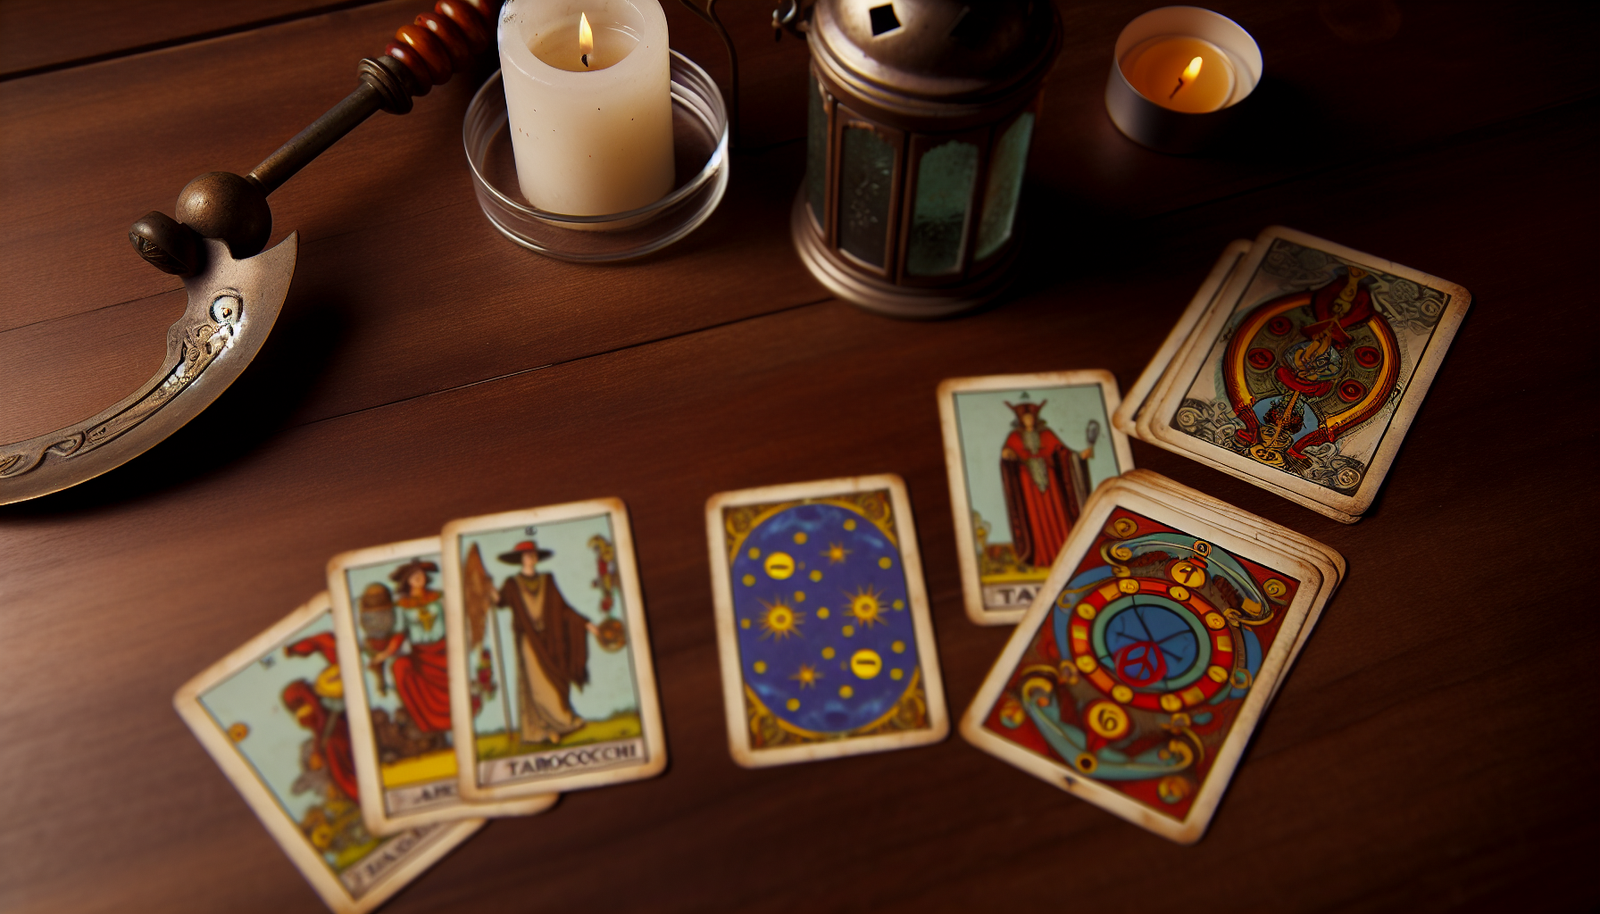 Esplorare i tarocchi è un viaggio intrigante nel mondo dell'occulto. Questi misteriosi mazzi di carte rivelano segreti e intuizioni nascoste attraverso simboli e immagini suggestive.